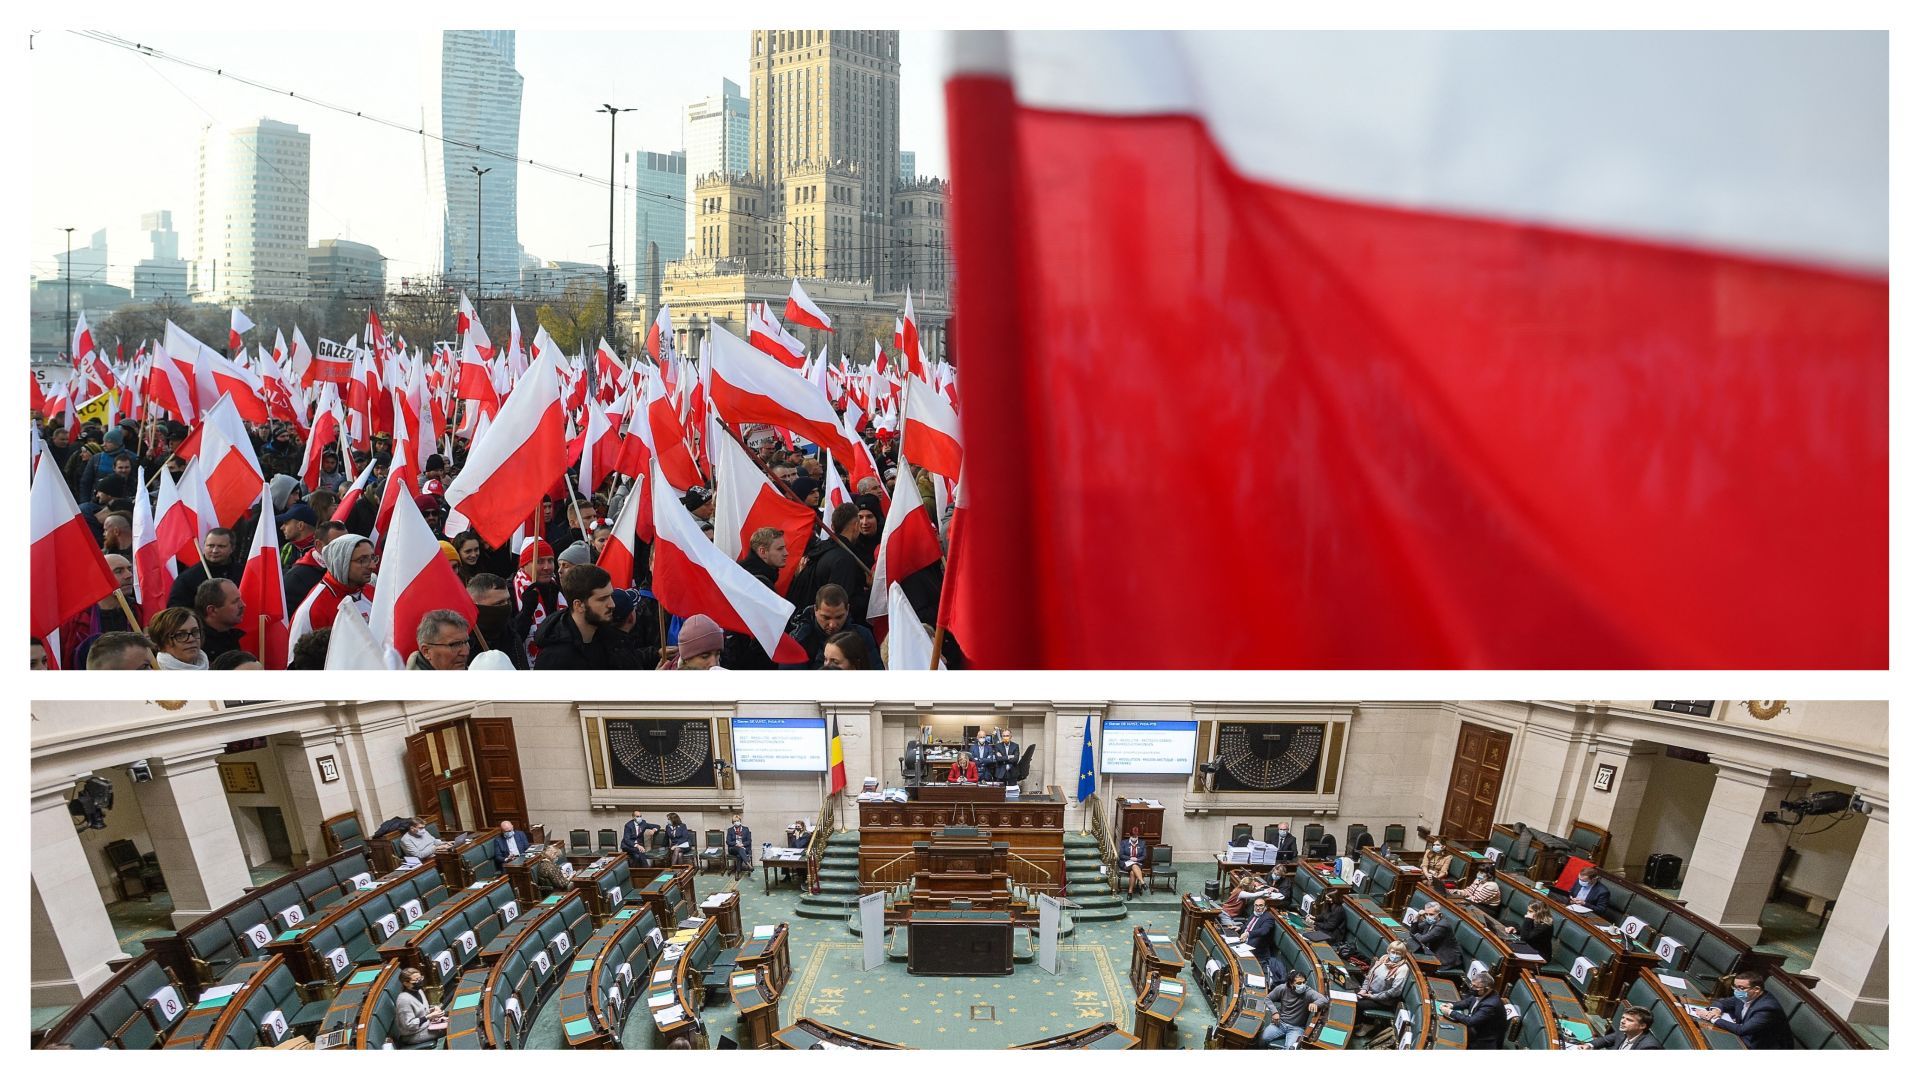 Chambre des députés en Belgique et drapeaux polonais à Varsovie (images d’illustration)